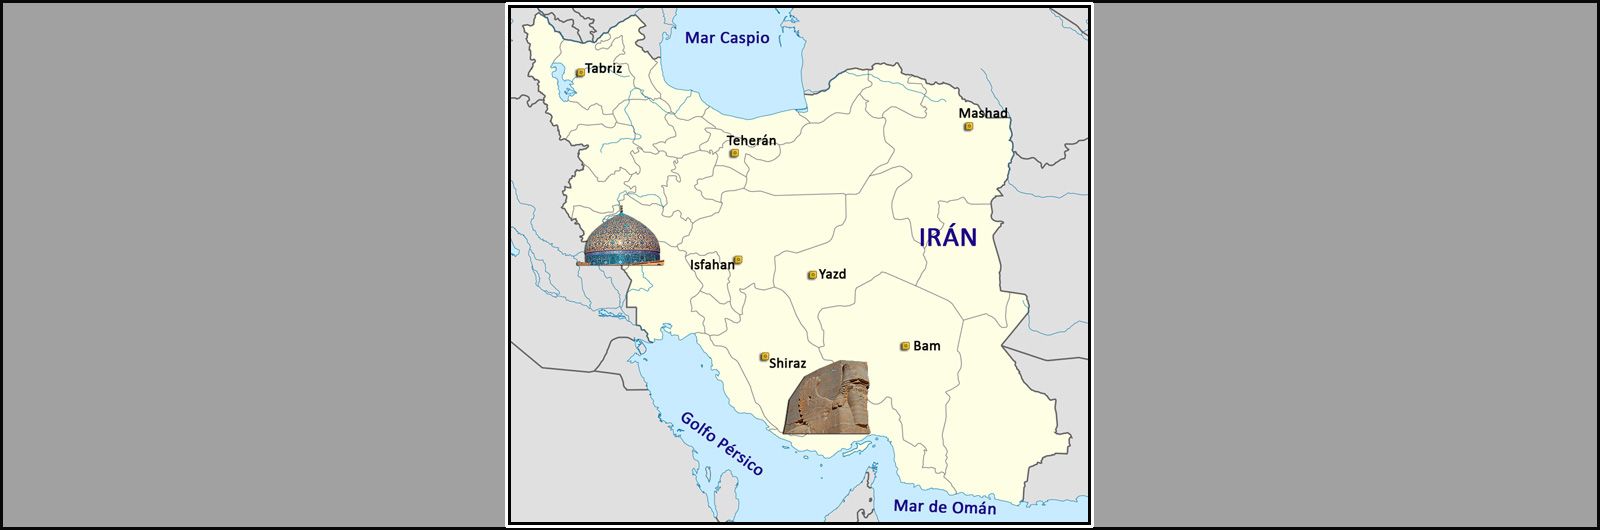 04 Ruta de la Seda: Ciudades y Lugares. Irán